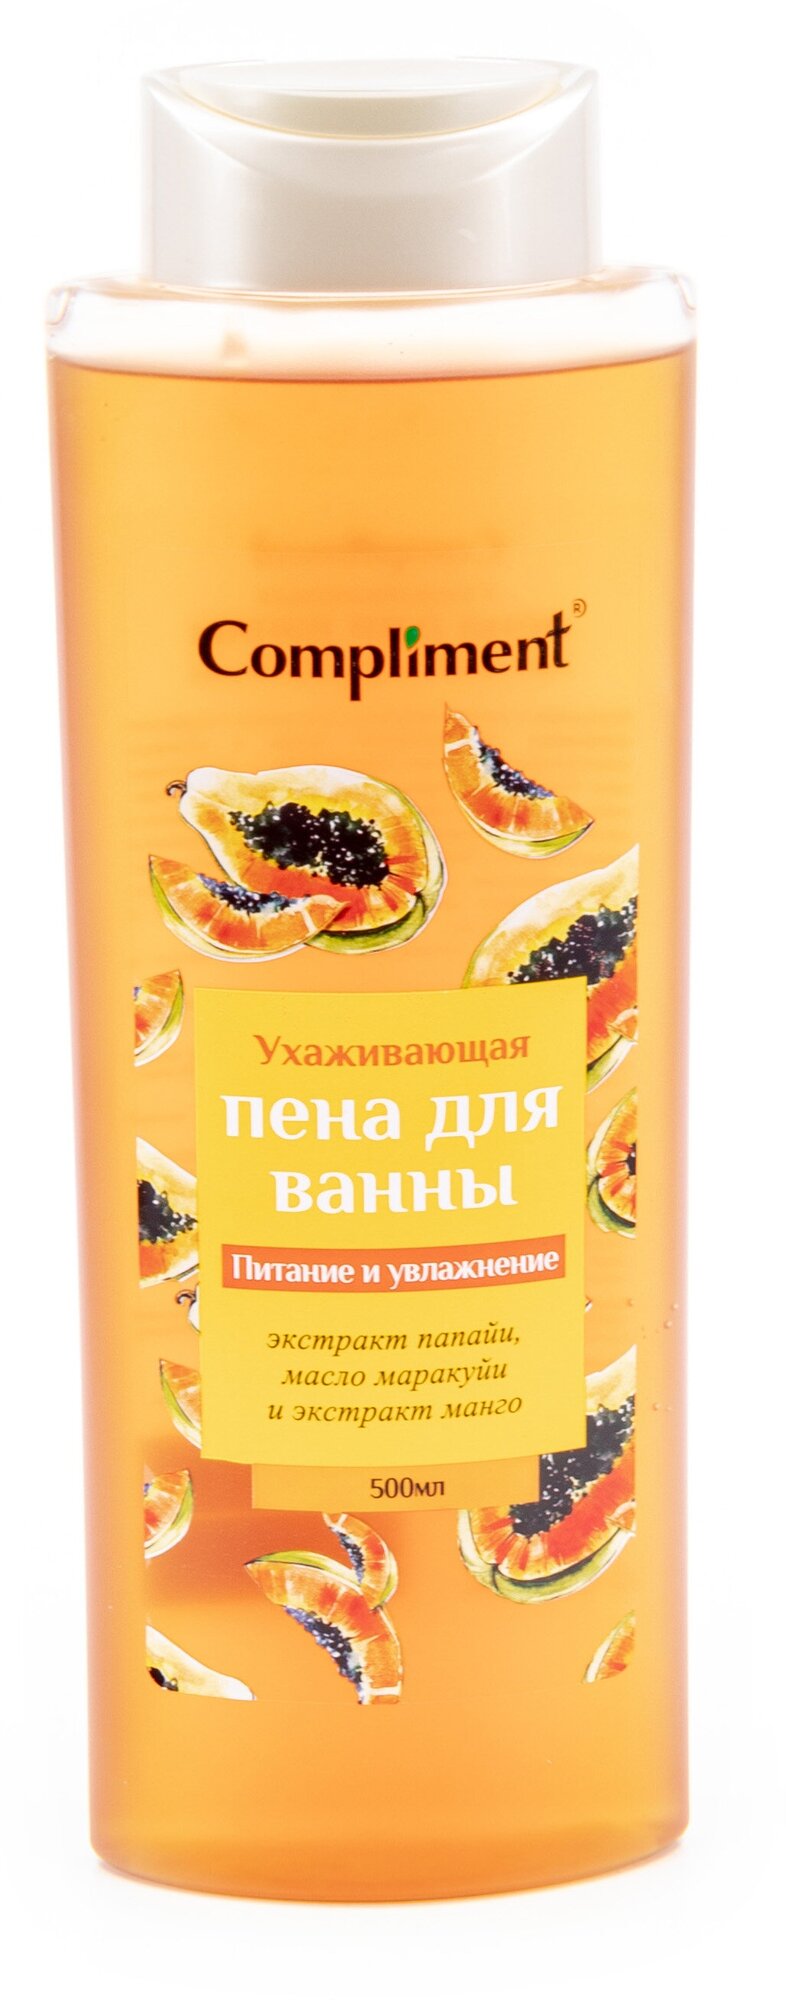 Compliment / Комплимент Пена для ванн Ухаживающая с экстрактами папайи и манго и маслом маракуйи 500мл / питание и увлажнение кожи